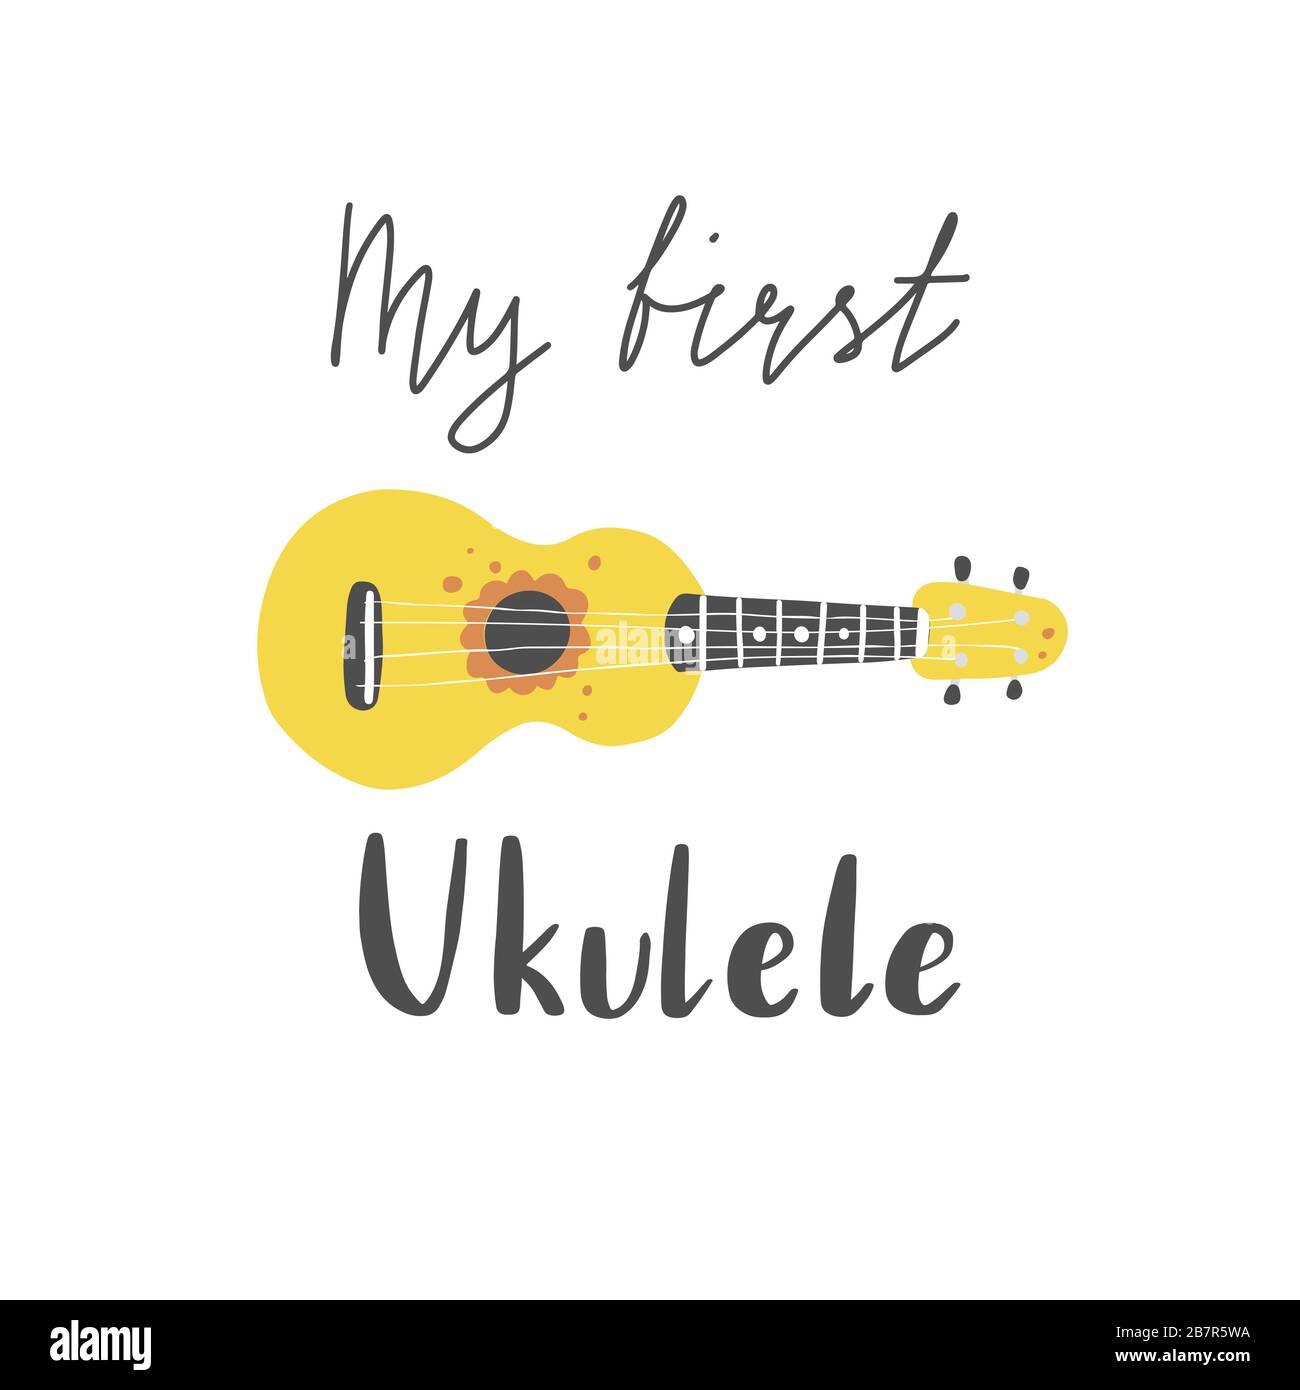 Joli dessin animé ukulele pour affiche d'été, motif carte avec texte lettrage Mon premier ukulele. Petite guitare, instrument de musique à cordes de style hawaï. Illuataration vectorielle de style simple dessiné à la main. Illustration de Vecteur